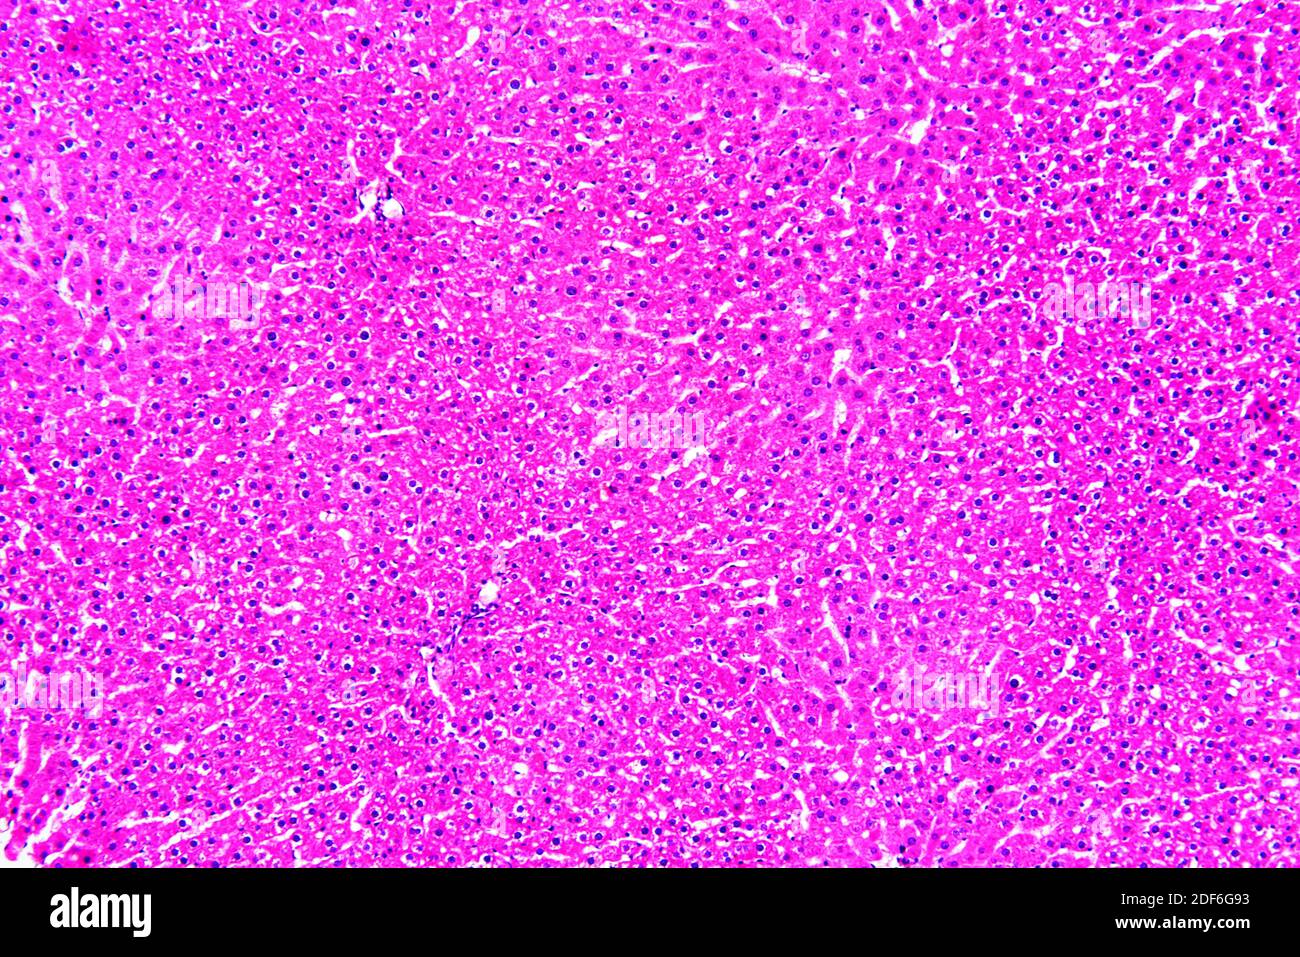 Fegato umano sano o normale con epatociti. Microscopio ottico X100. Foto Stock